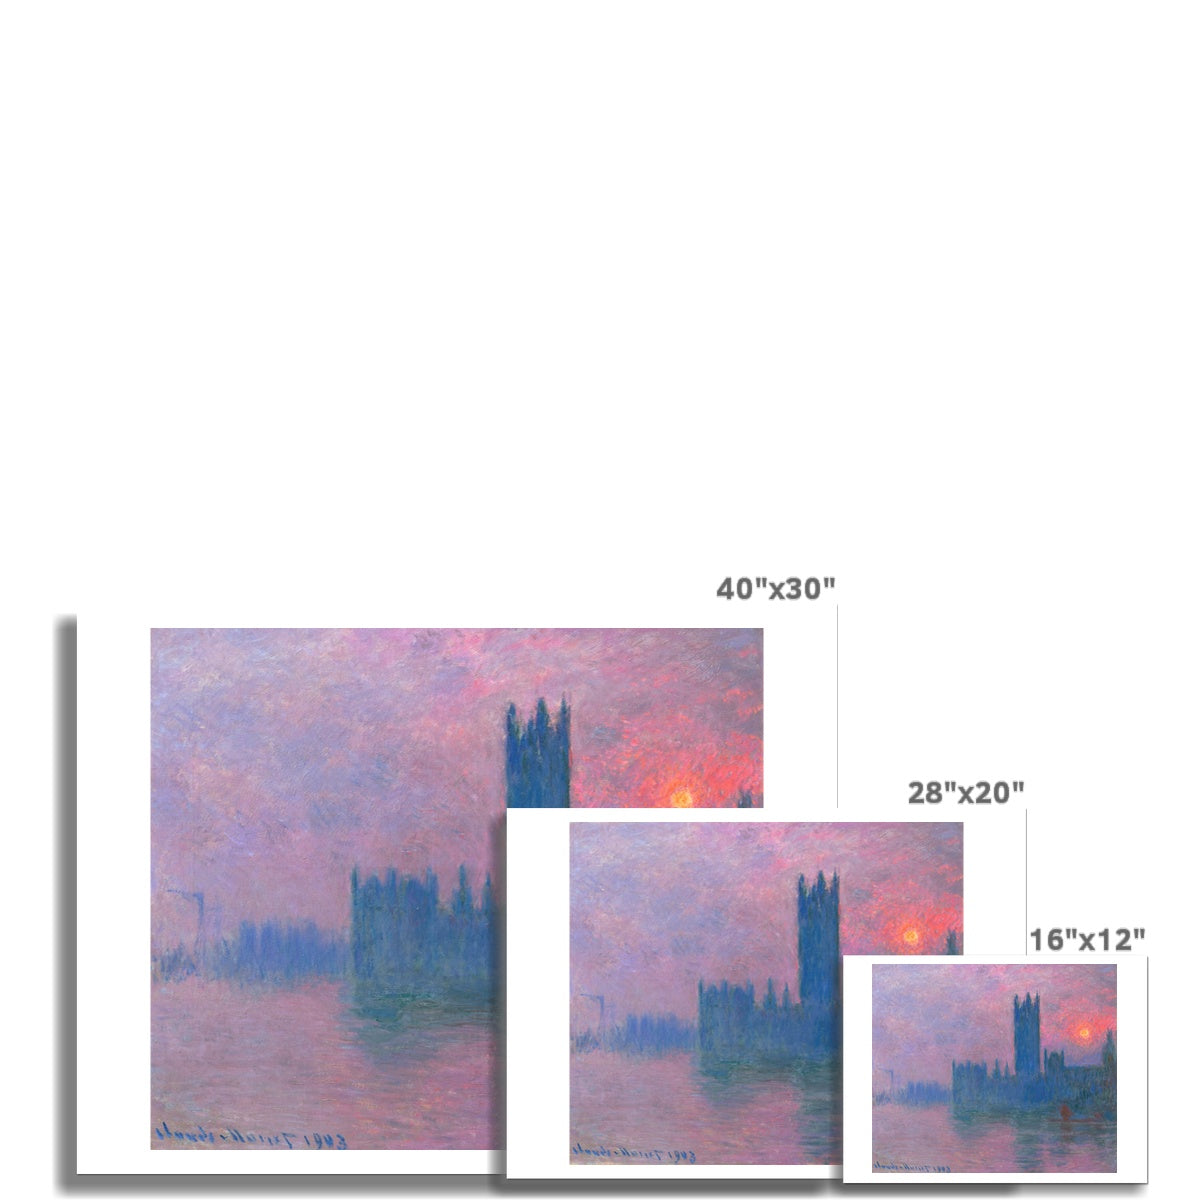 'Le Parlement, Soleil Couchant' (Parliament, Setting Sun- London)  by Claude Monet. Open Edition Fine Art Print. Historic Art